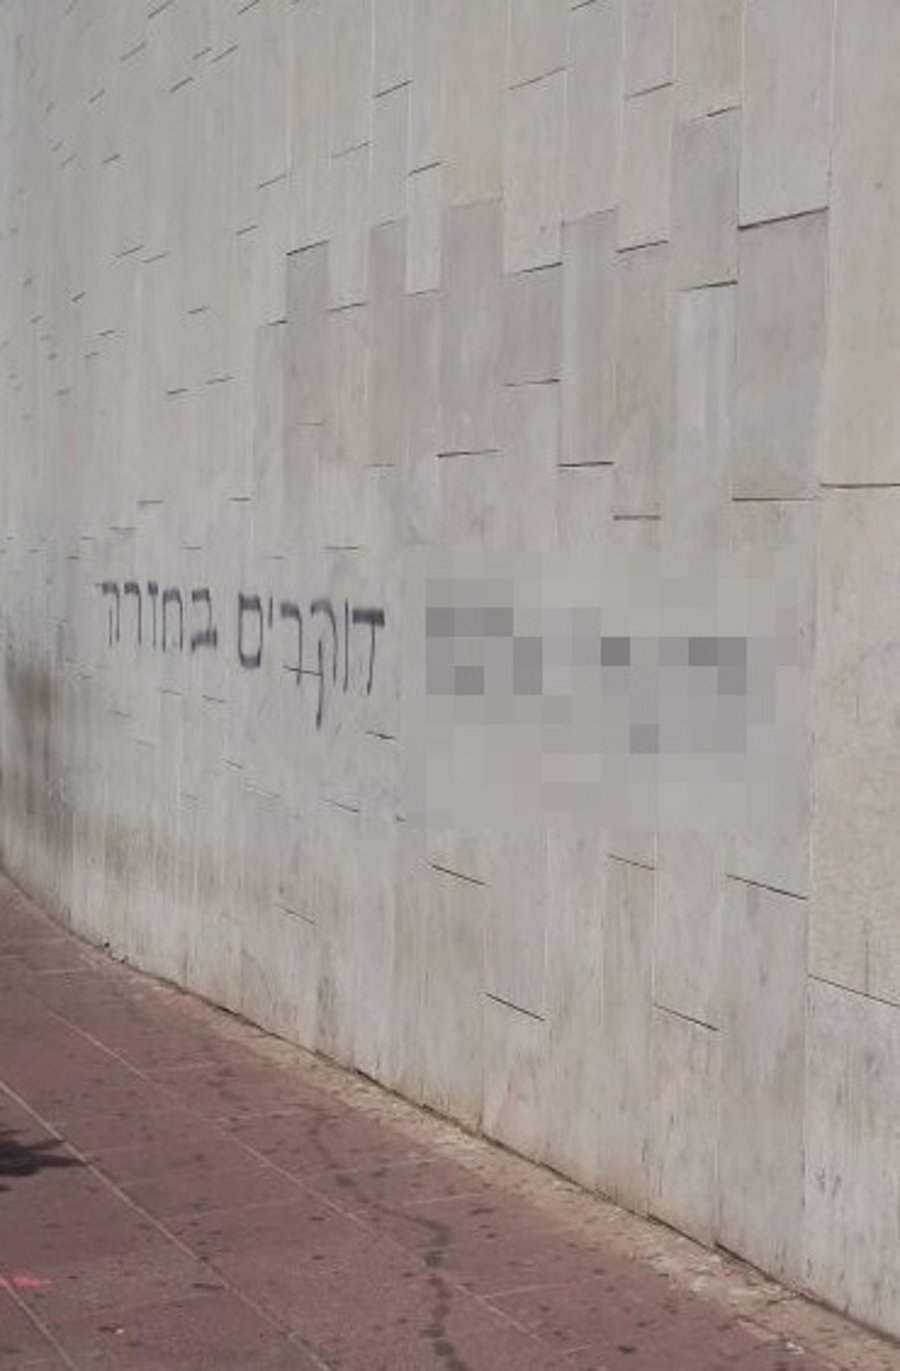 כתובות נאצה בתל אביב: "בן גביר היזהר"